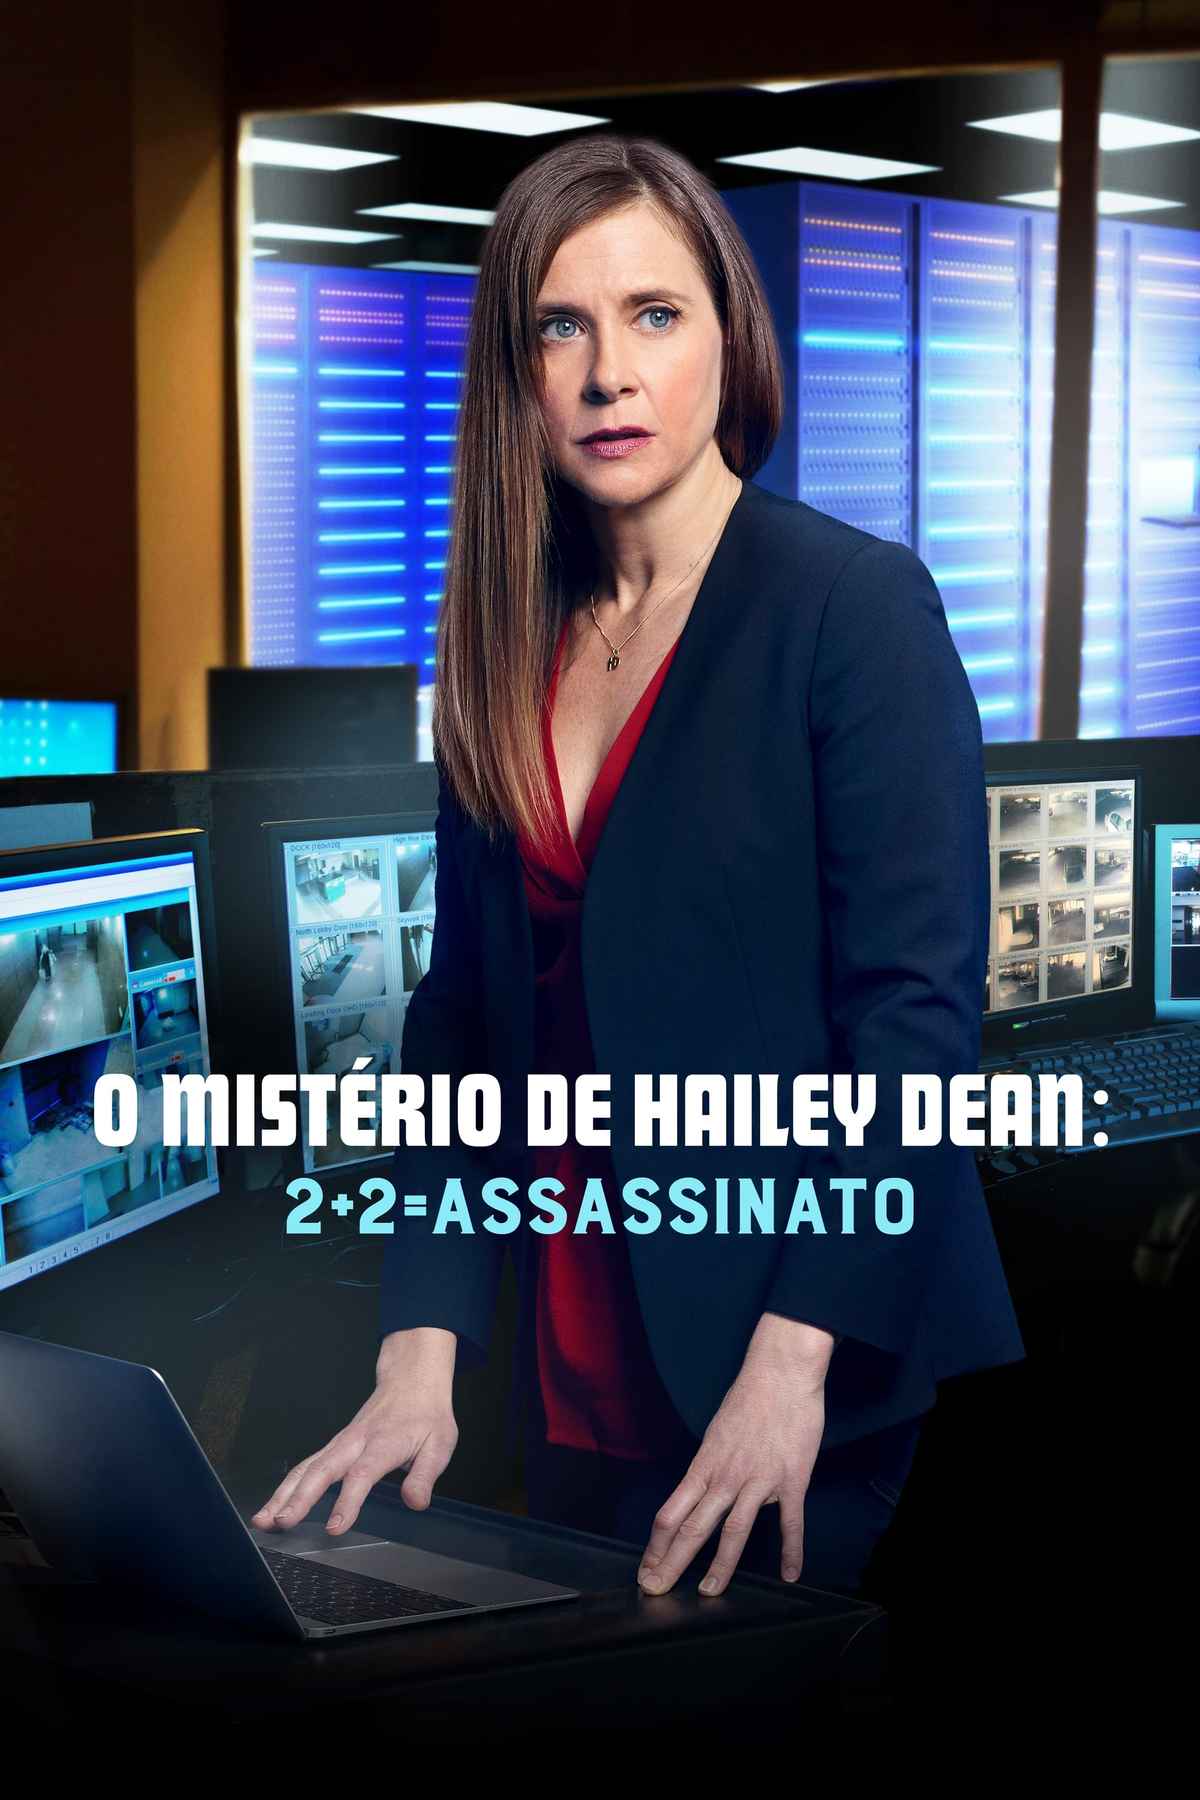 Hailey Dean Mysteries: 2 + 2 = Murder